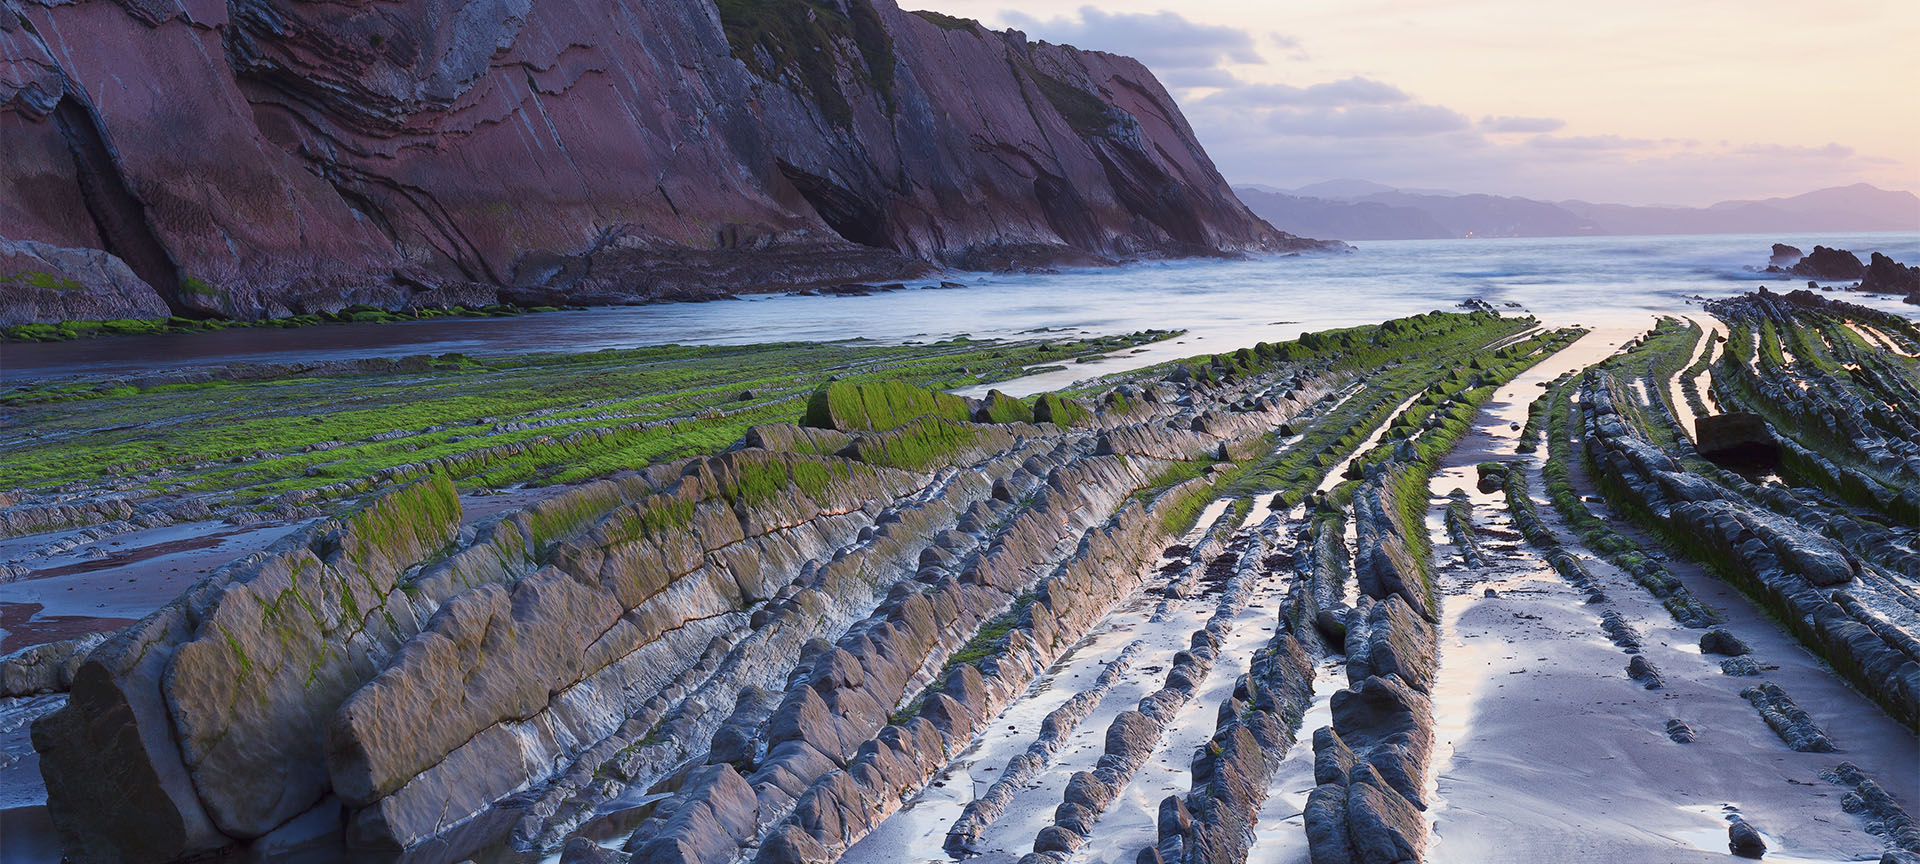 Geërodeerde rotsformaties aan kustlijn bij zonsondergang.